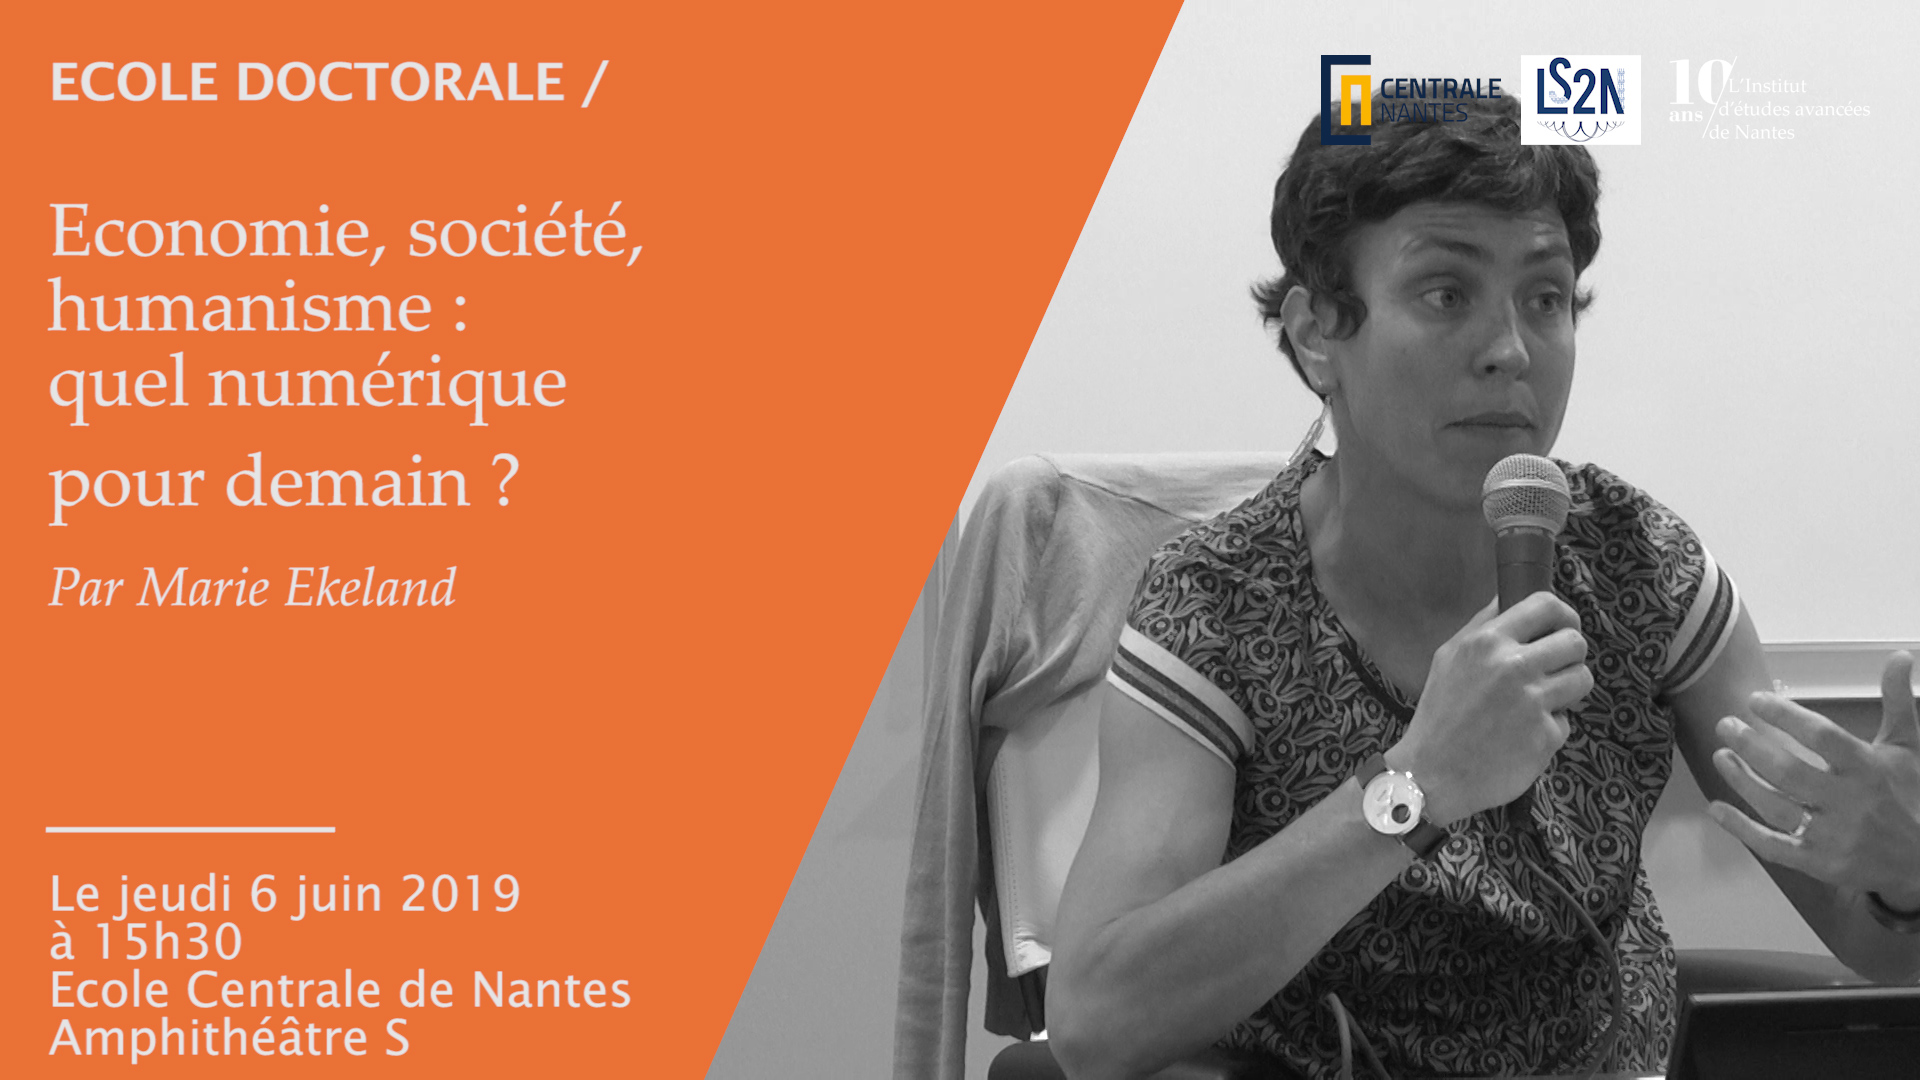 Ecole doctorale - conférence #3 de Marie Ekeland - " Economie, société, humanisme : quel numérique pour demain ? "